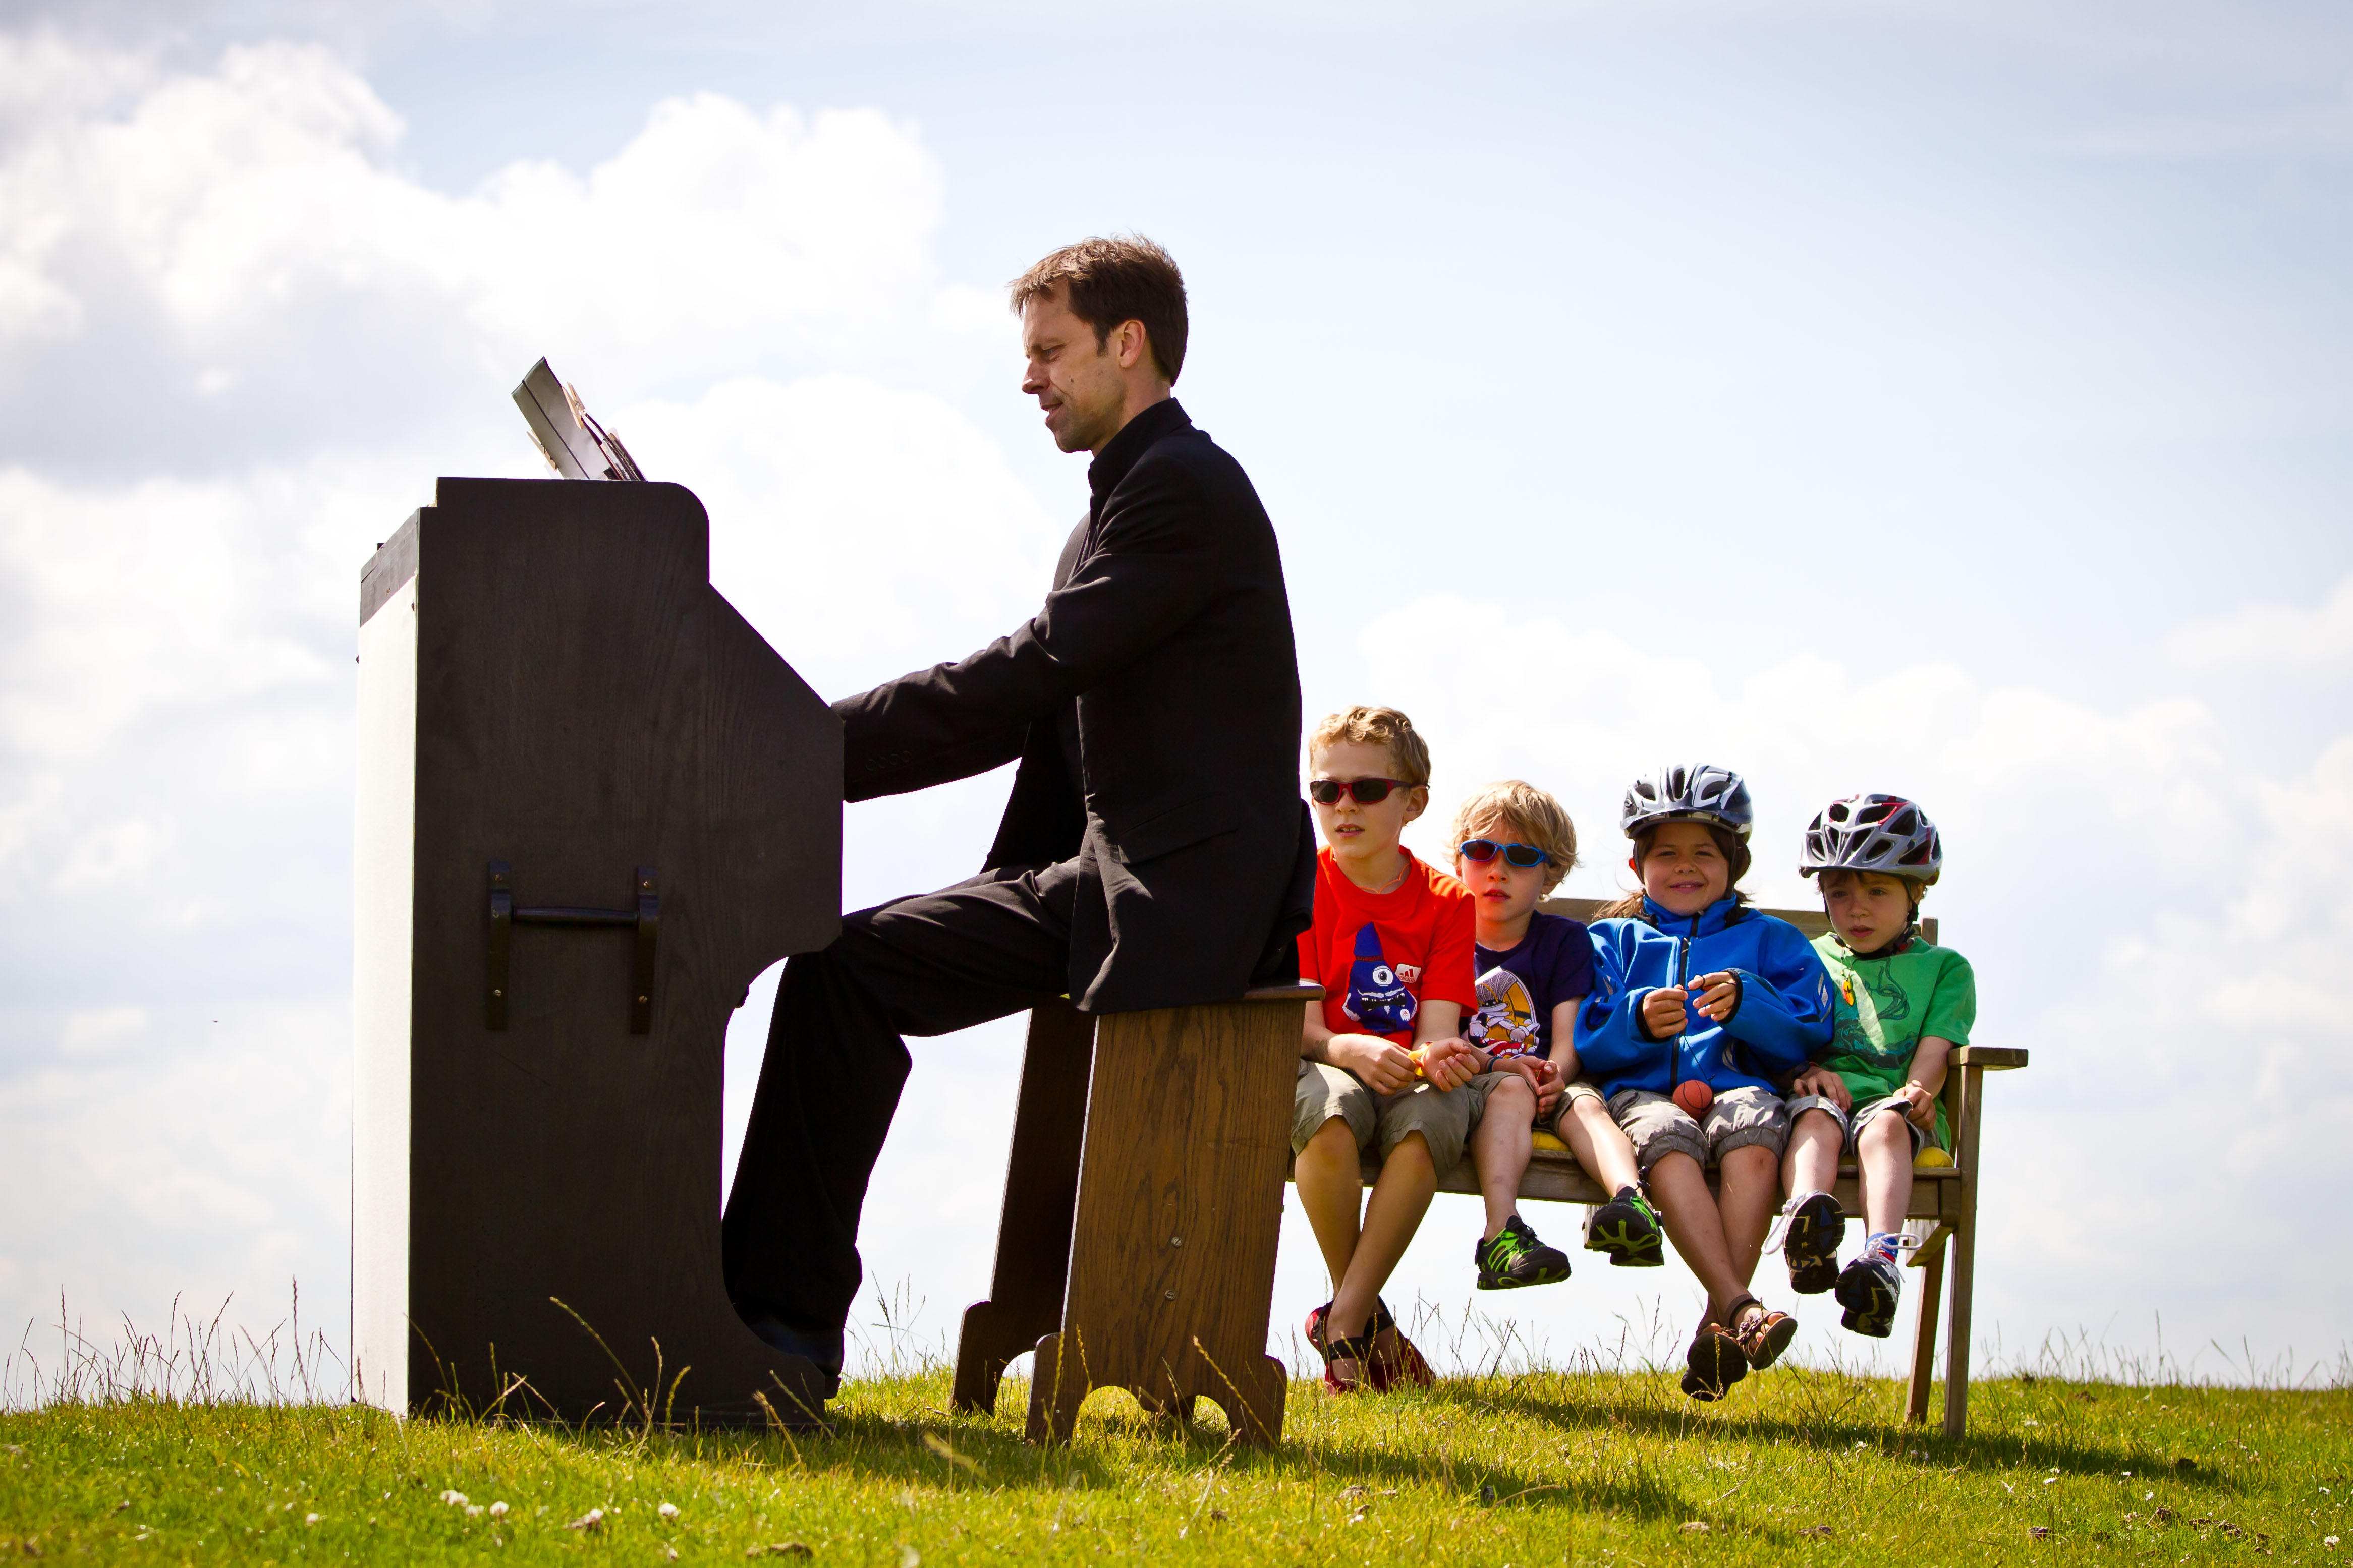 Auf einer Wiese sitzt ein schwarz gekleideter Pianist am Klavier. Hinter ihm vier Kinder in bunter Kleidung auf einer Bank, zwei von ihnen tragen einen Fahrradhelm.